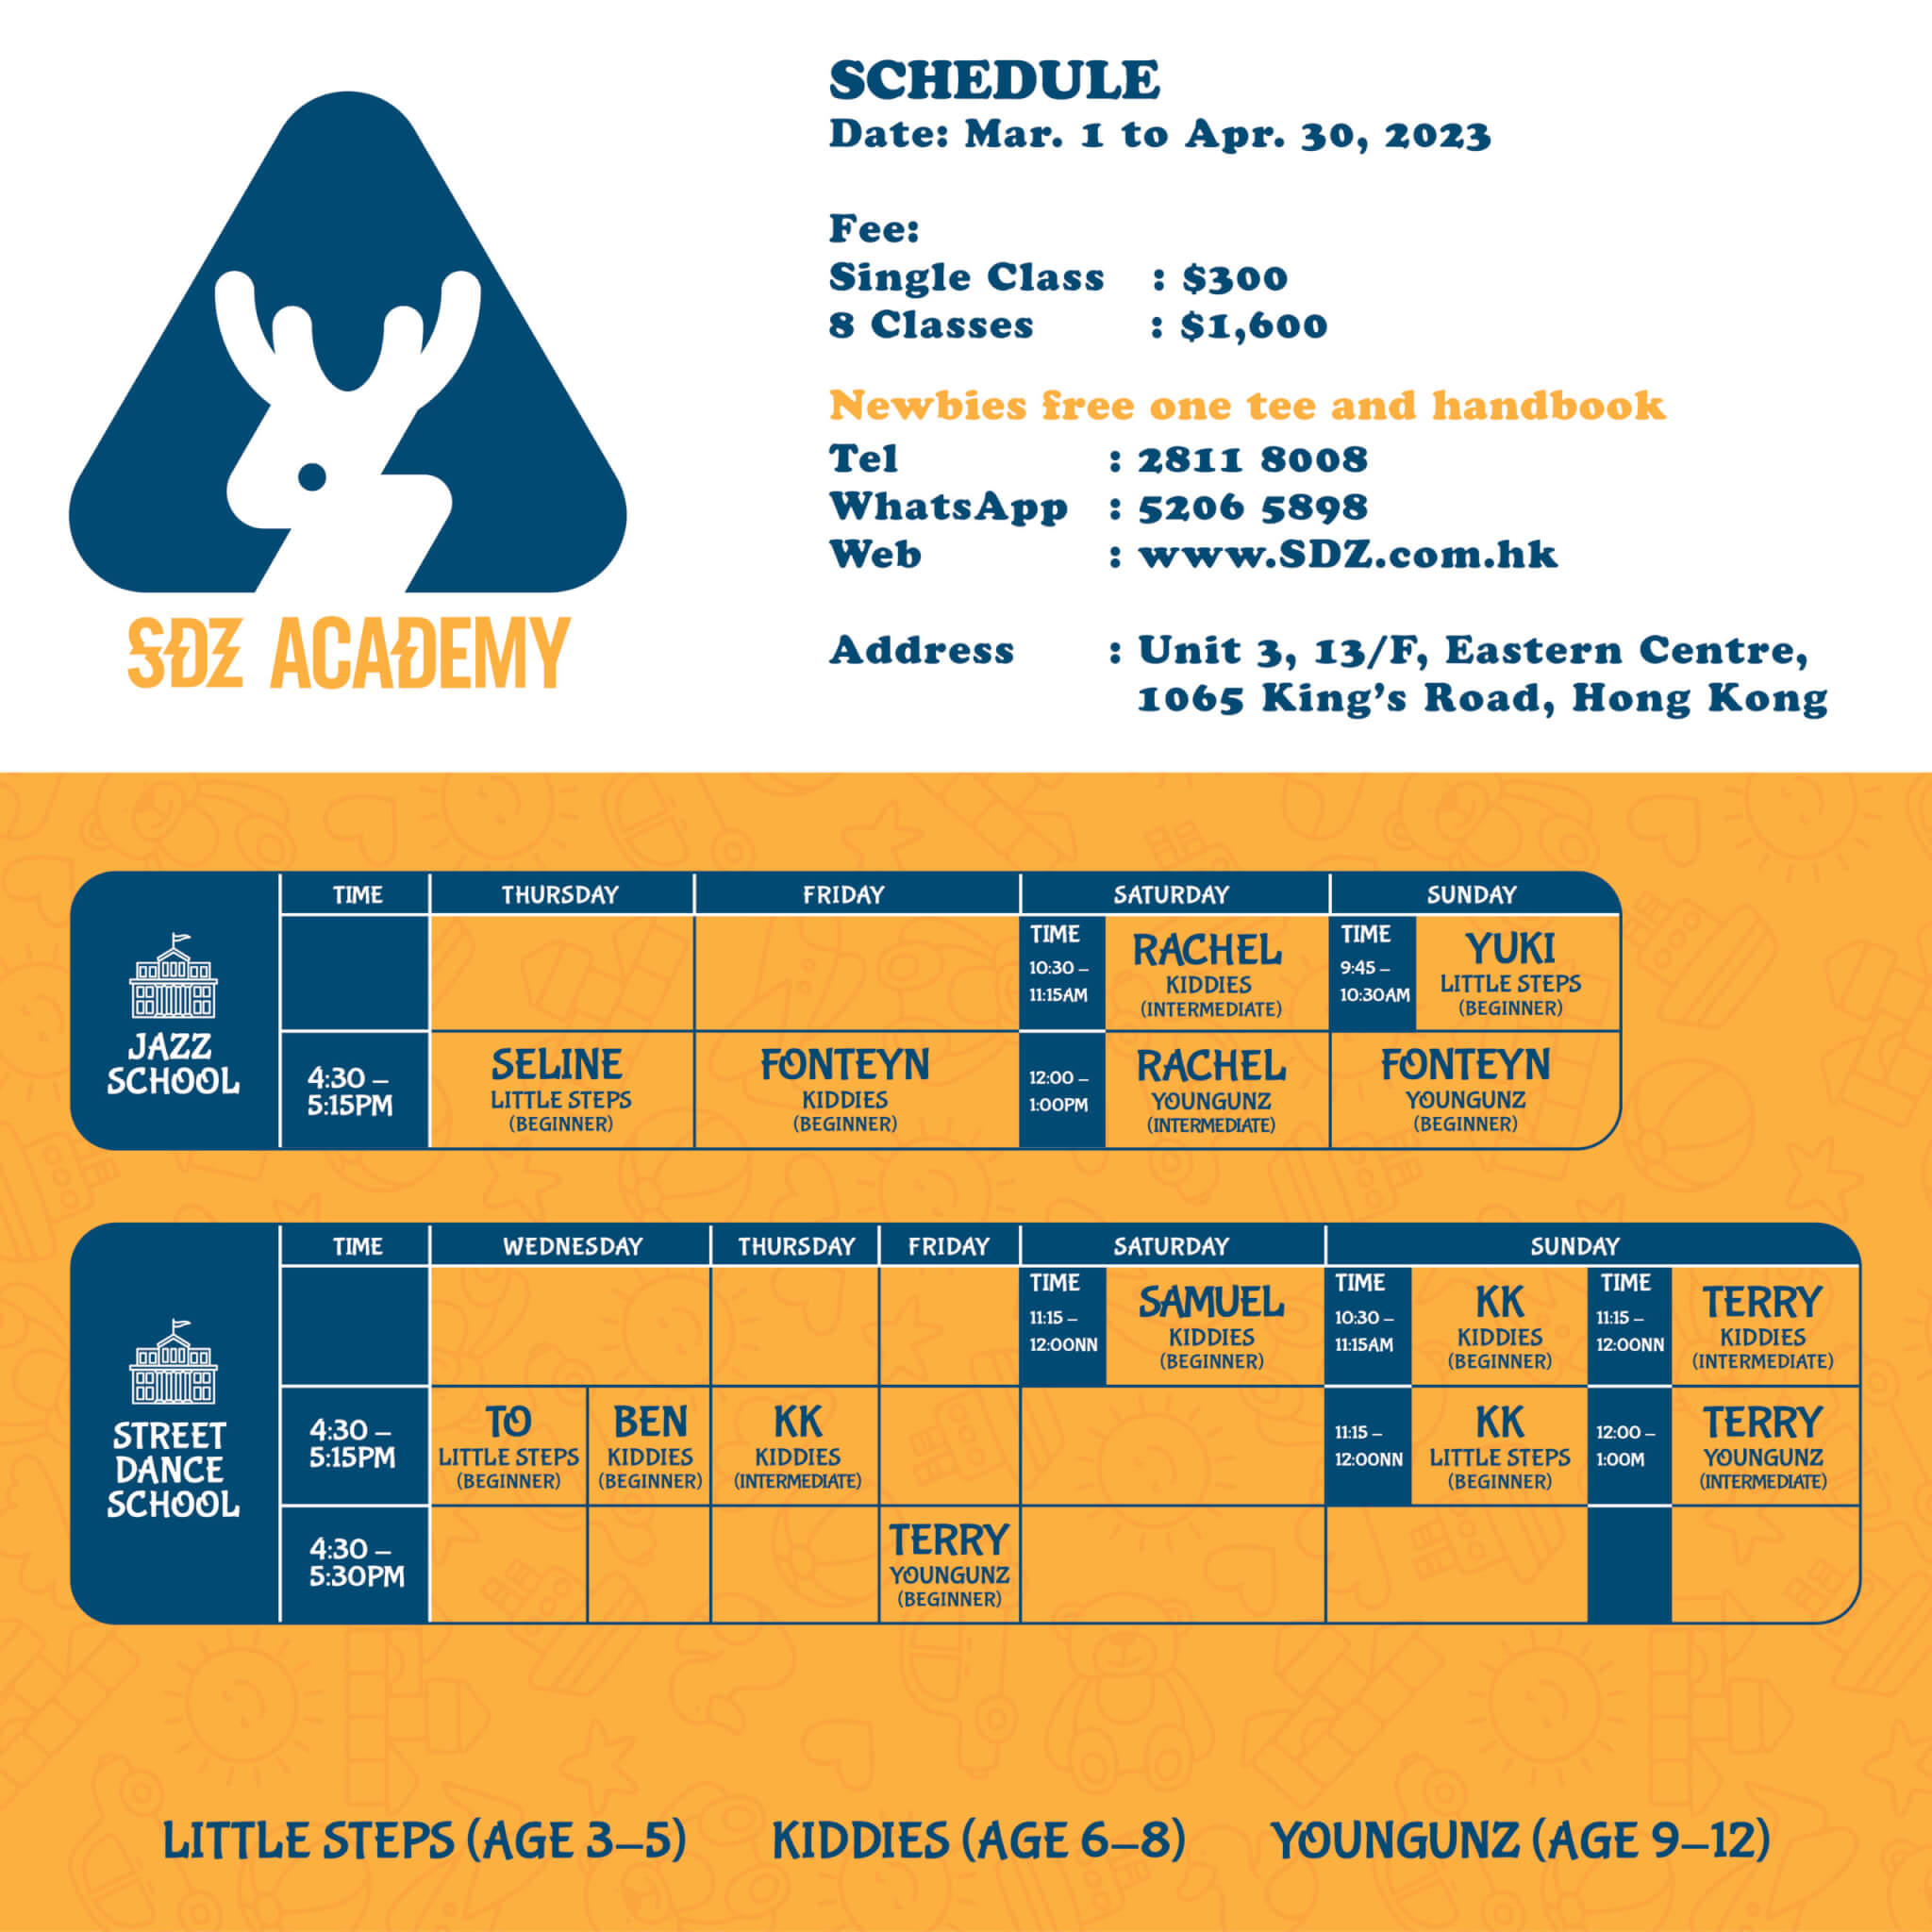 Studiodanz Academy Schedule